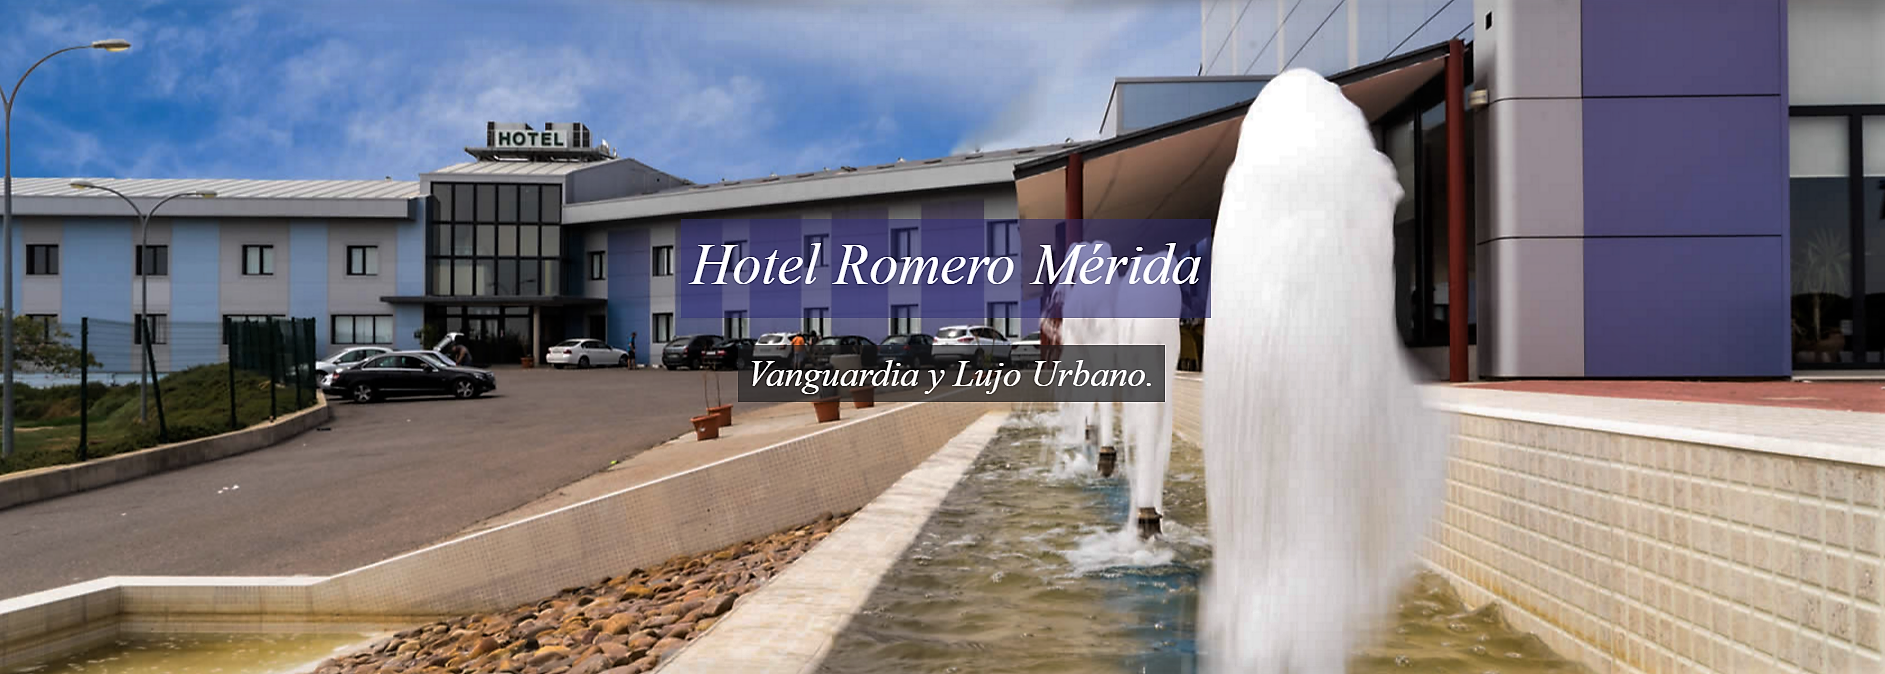 Hotel Merida Romero